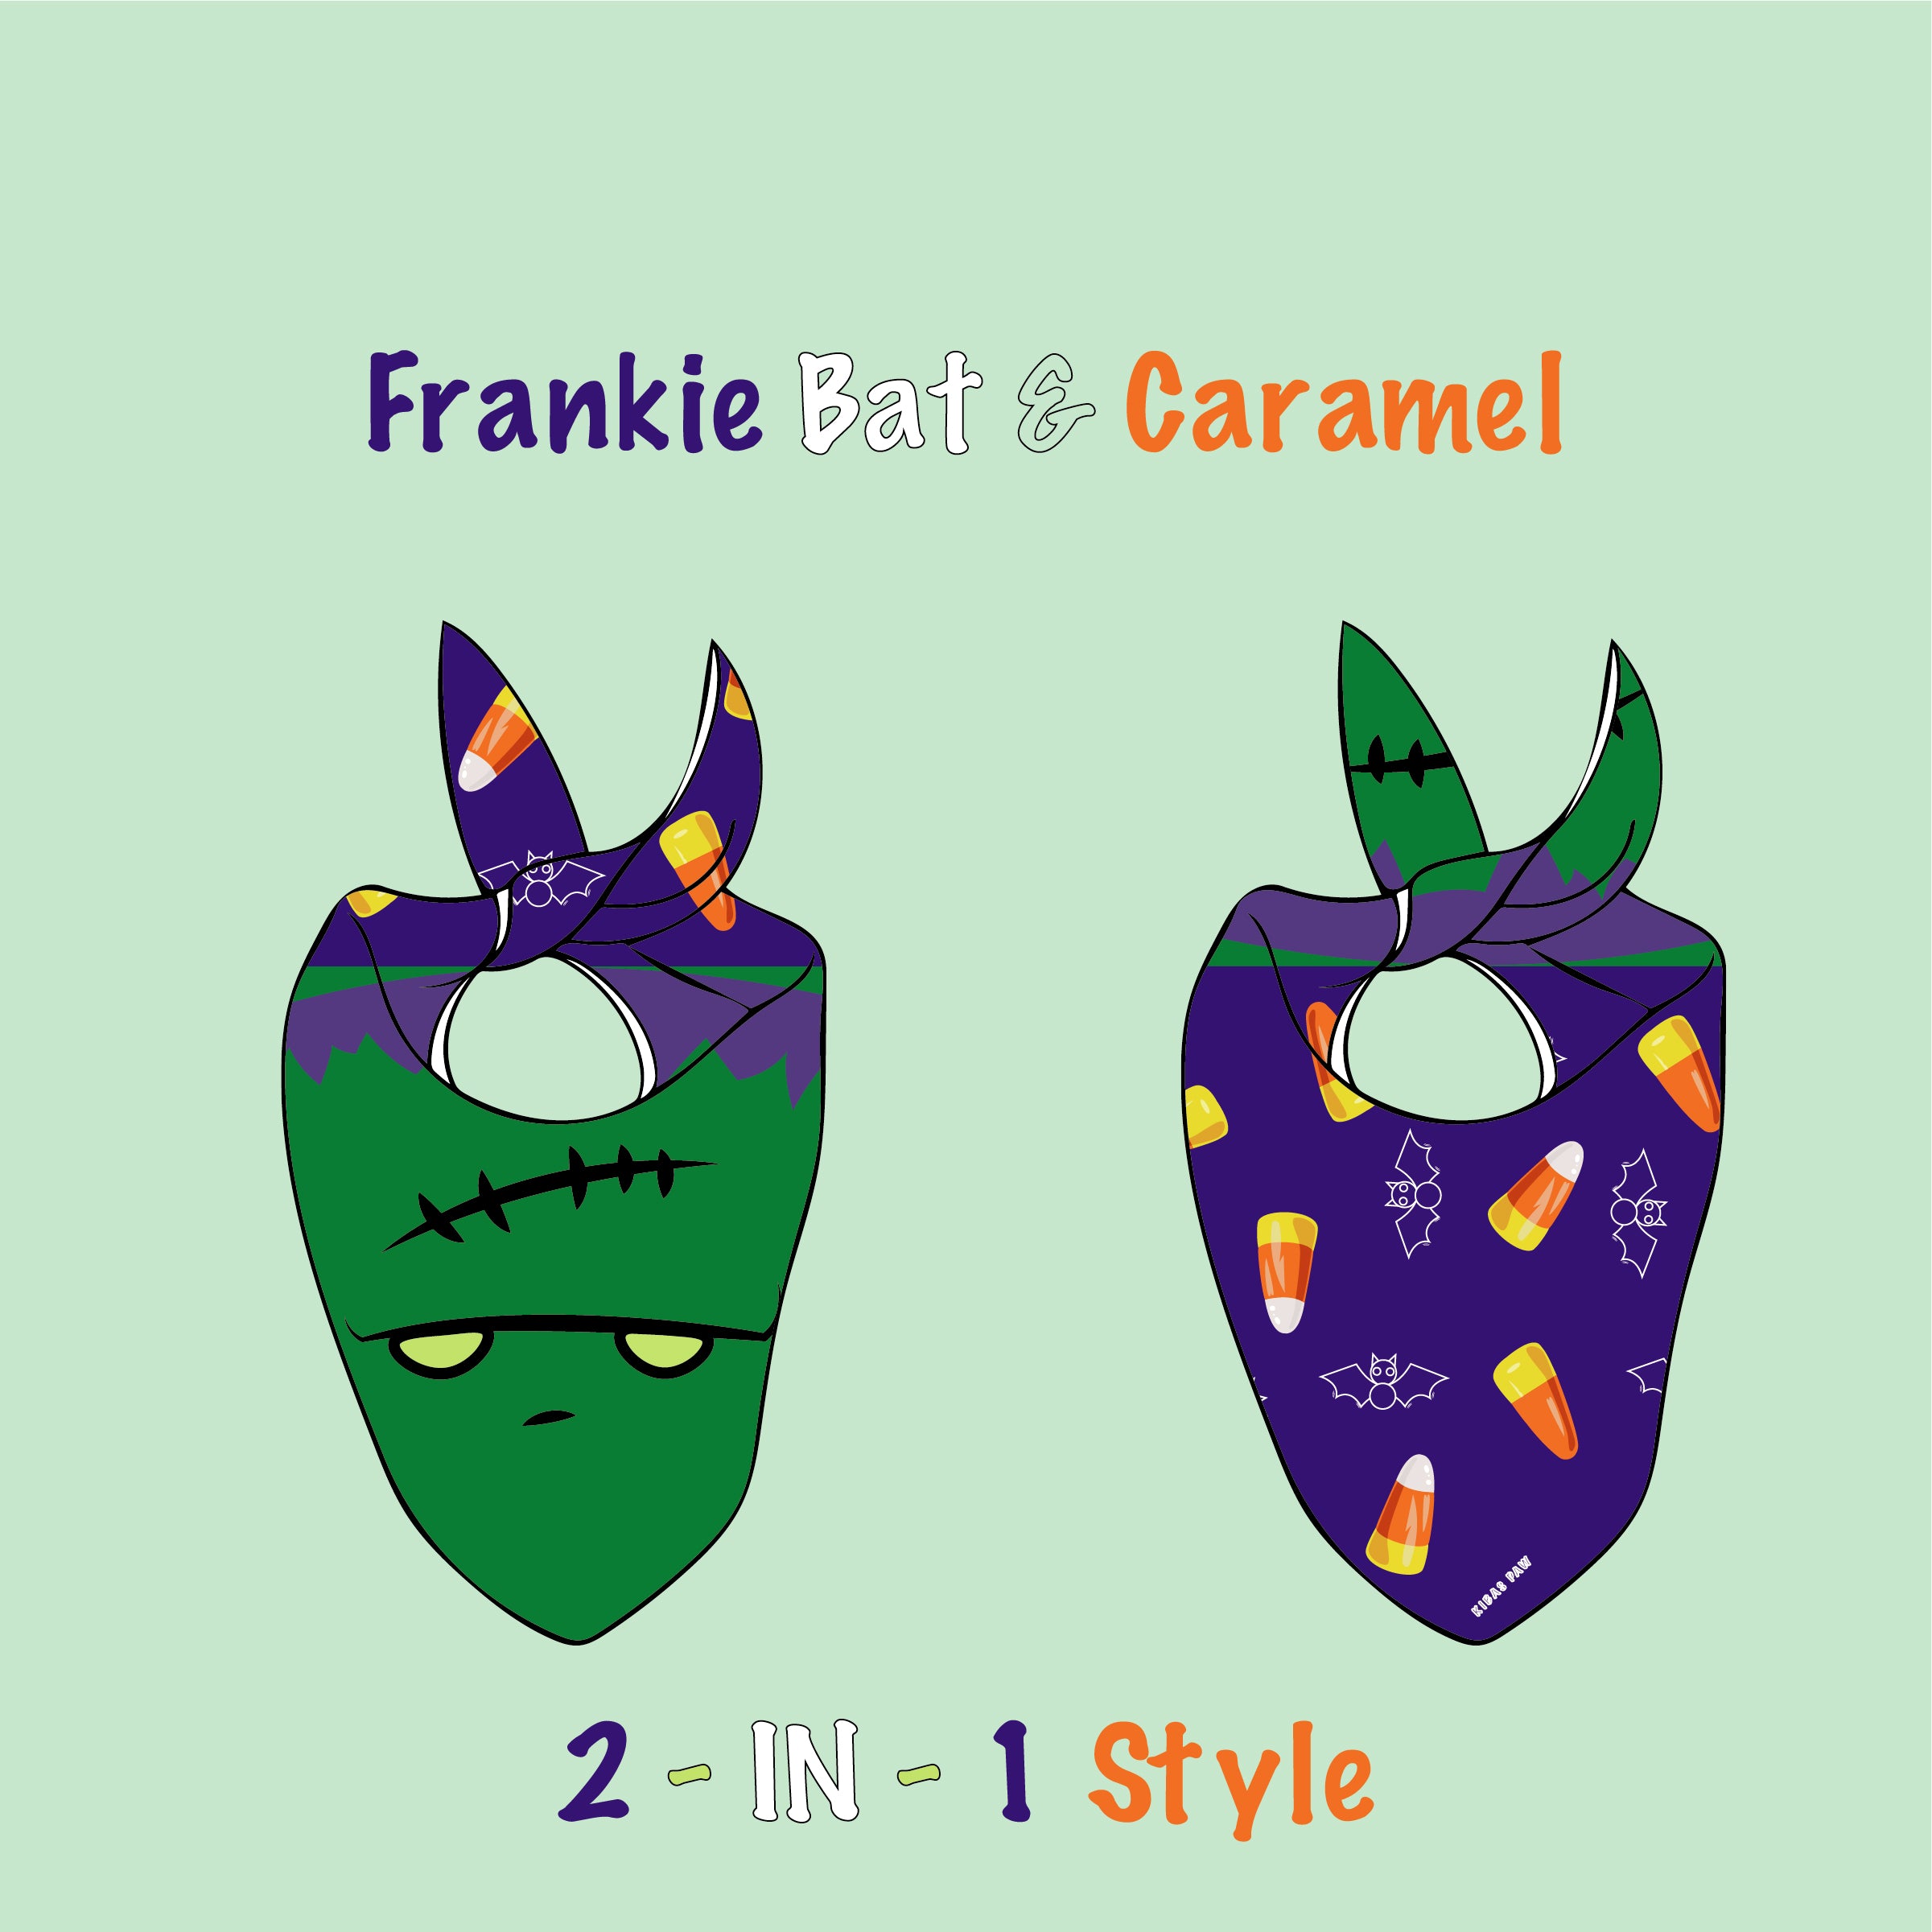 Frankie Bat & Caramel